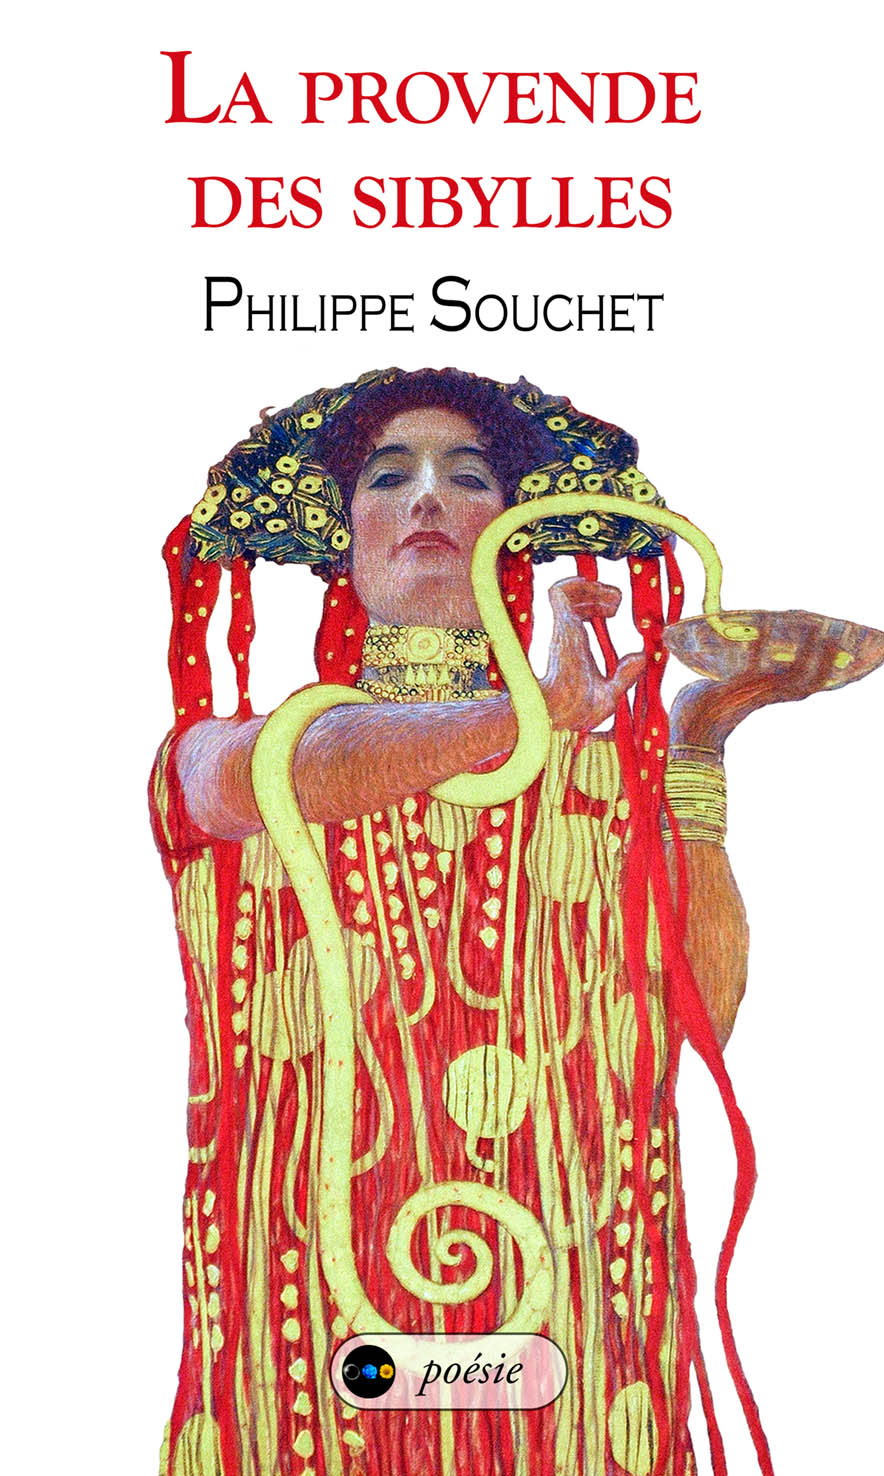 La Provende Des Sibylles Philippe Souchet Book Cover